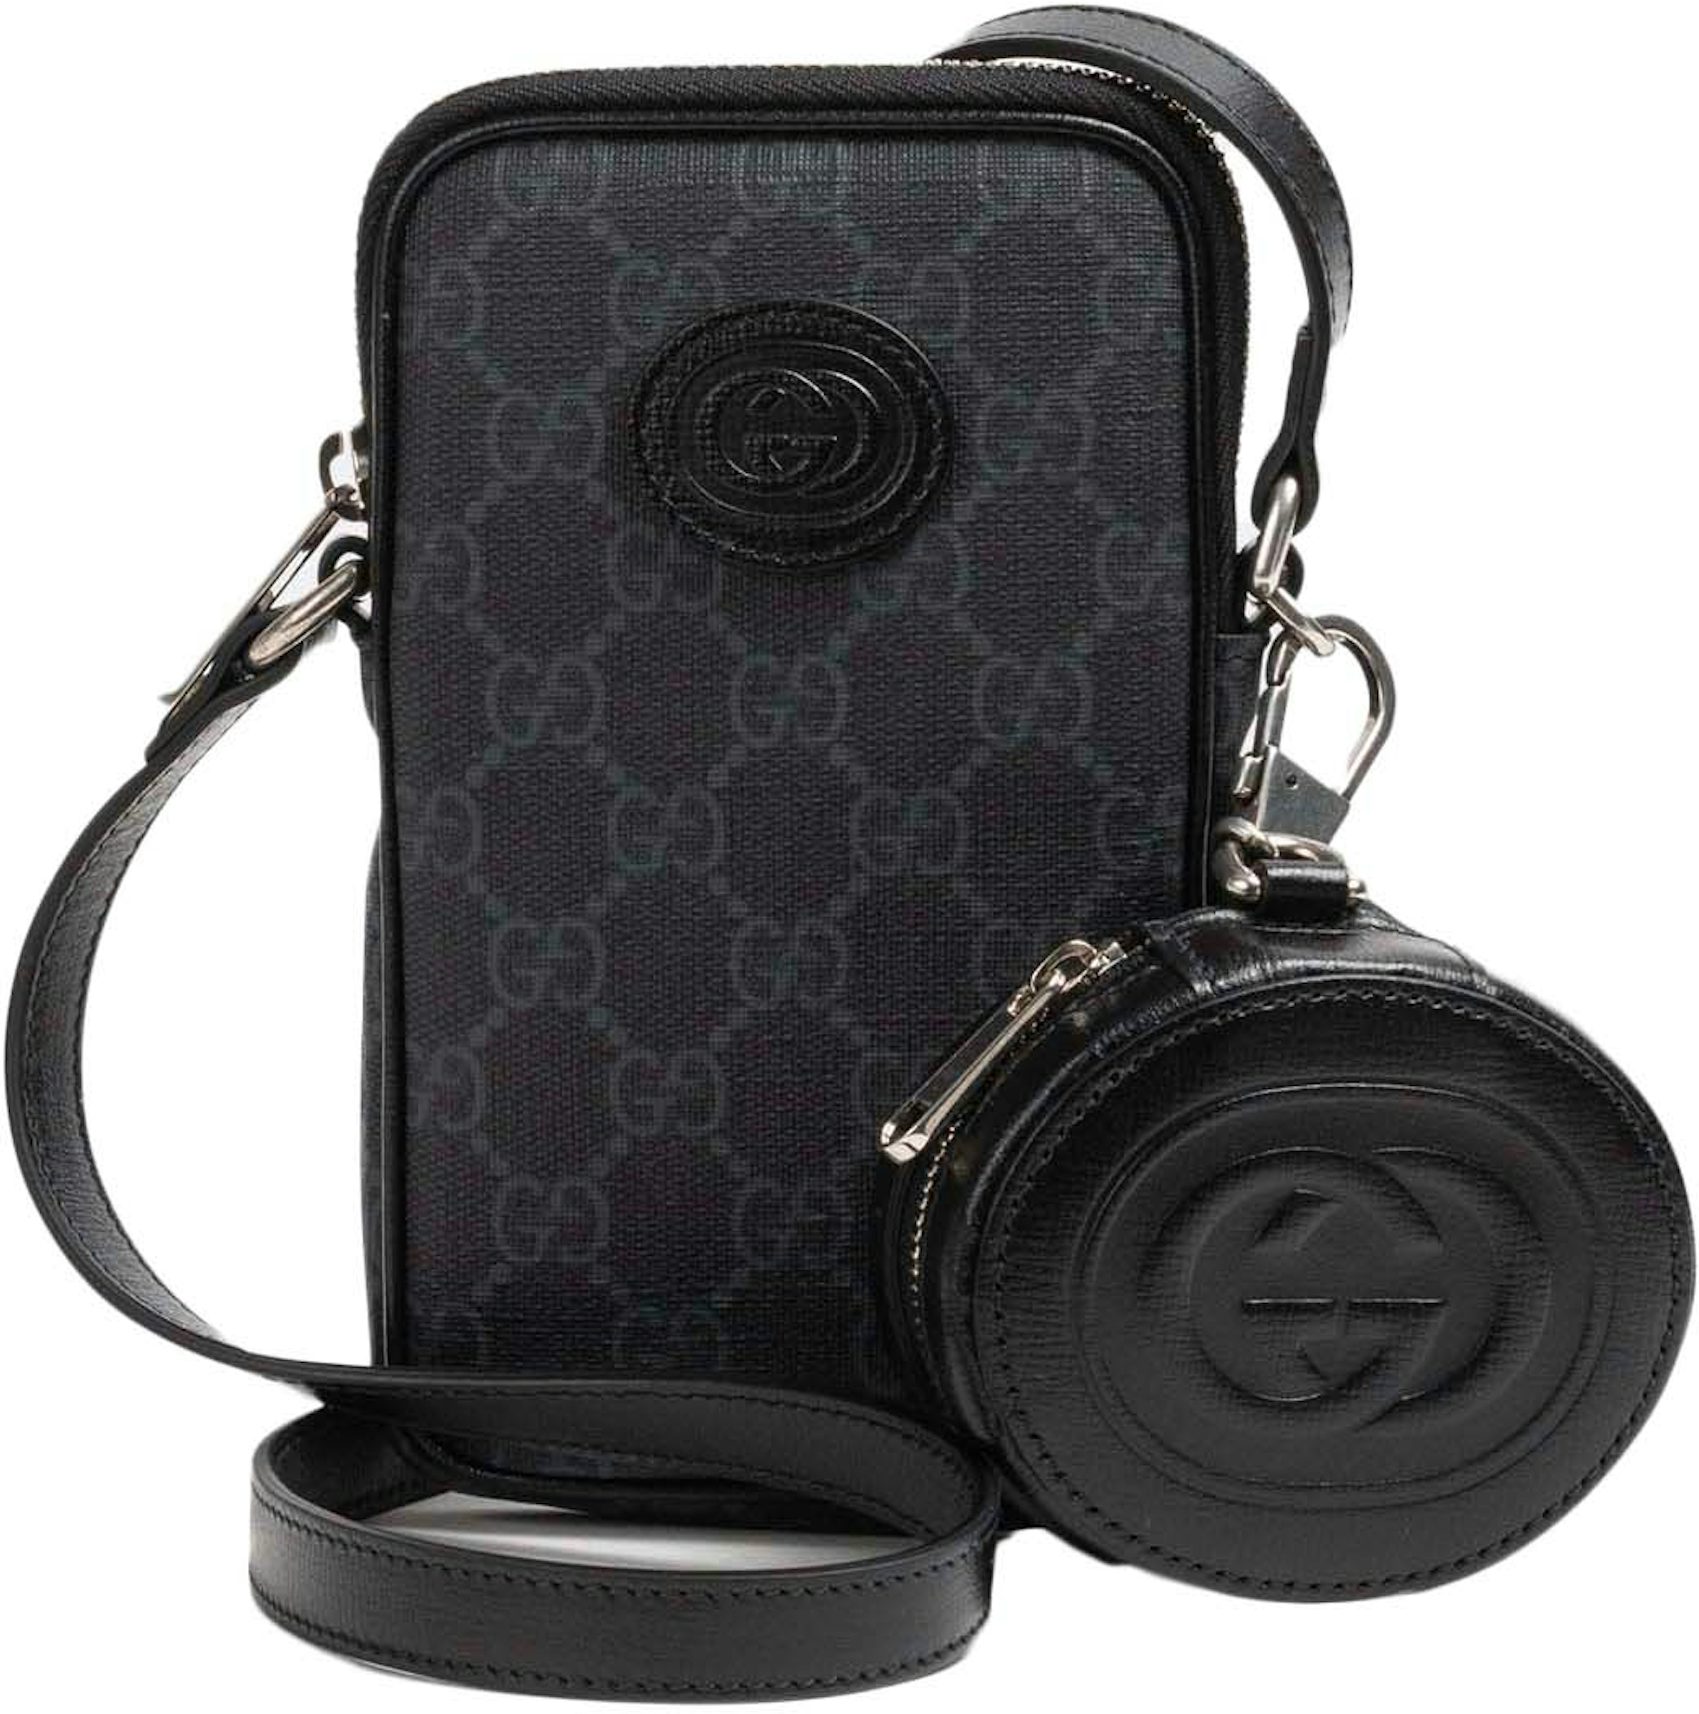 Gucci Interlocking Shoulder Bag Black